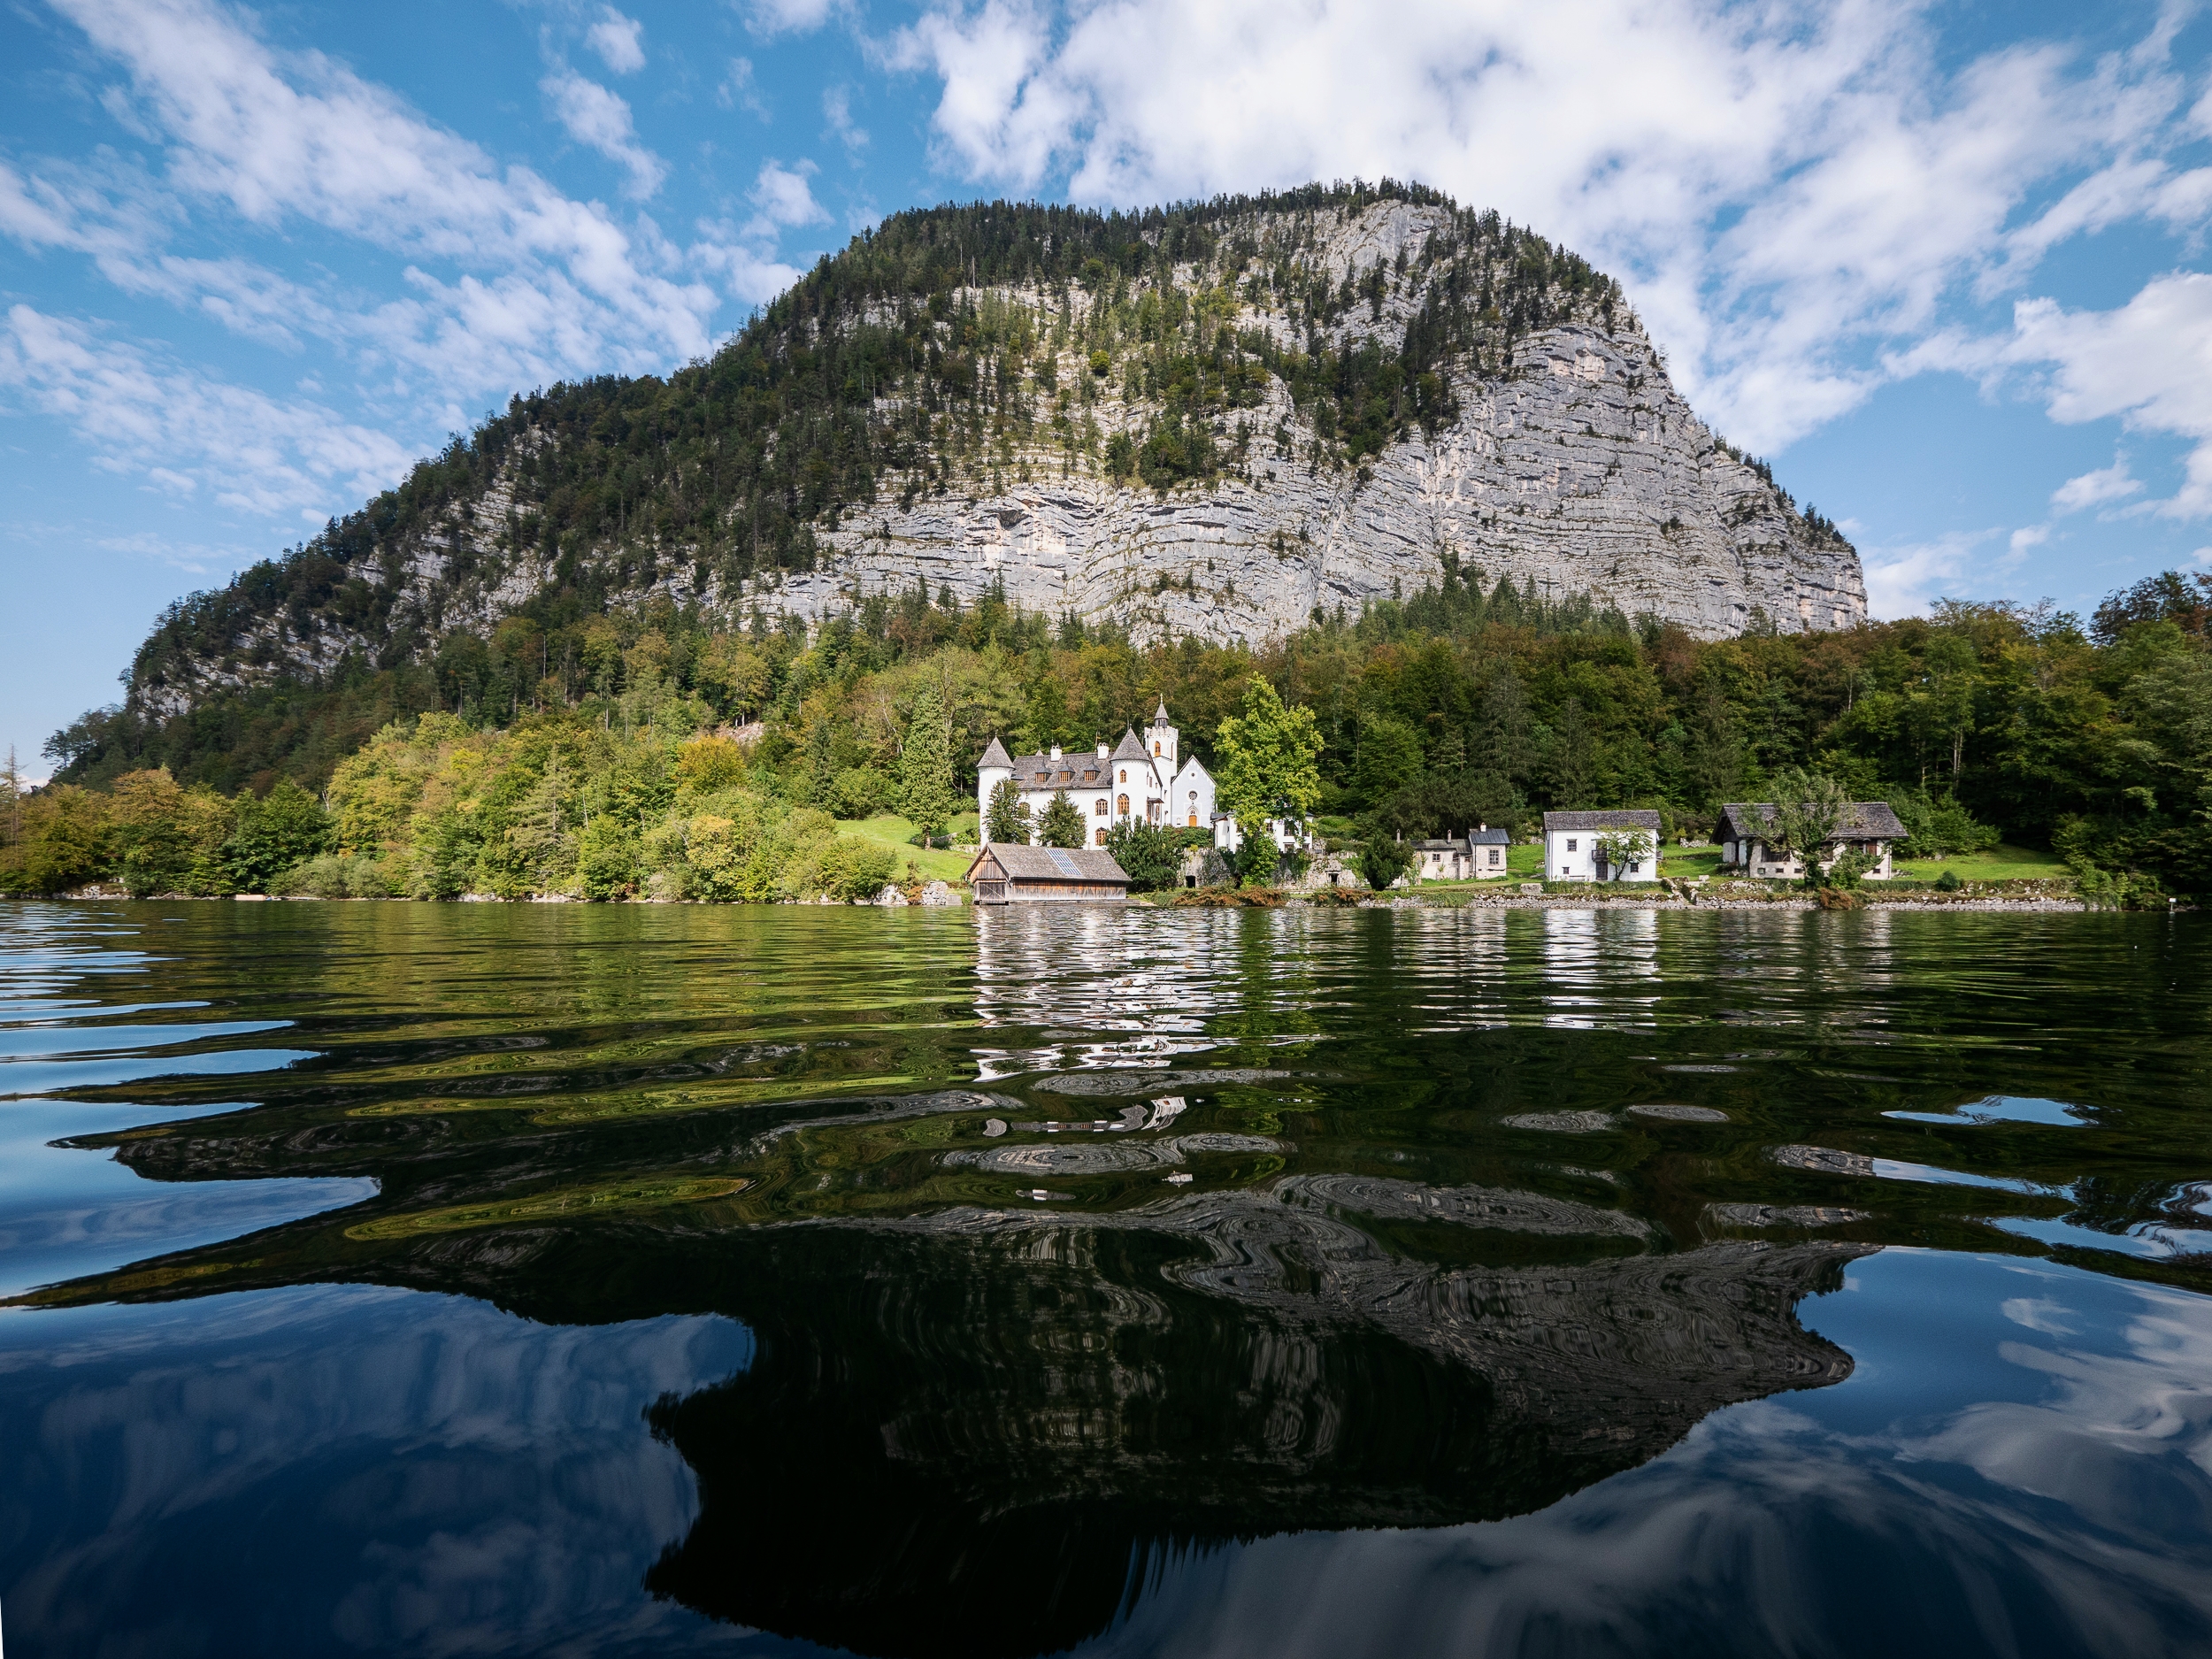 Lake Hallstatt, Austria